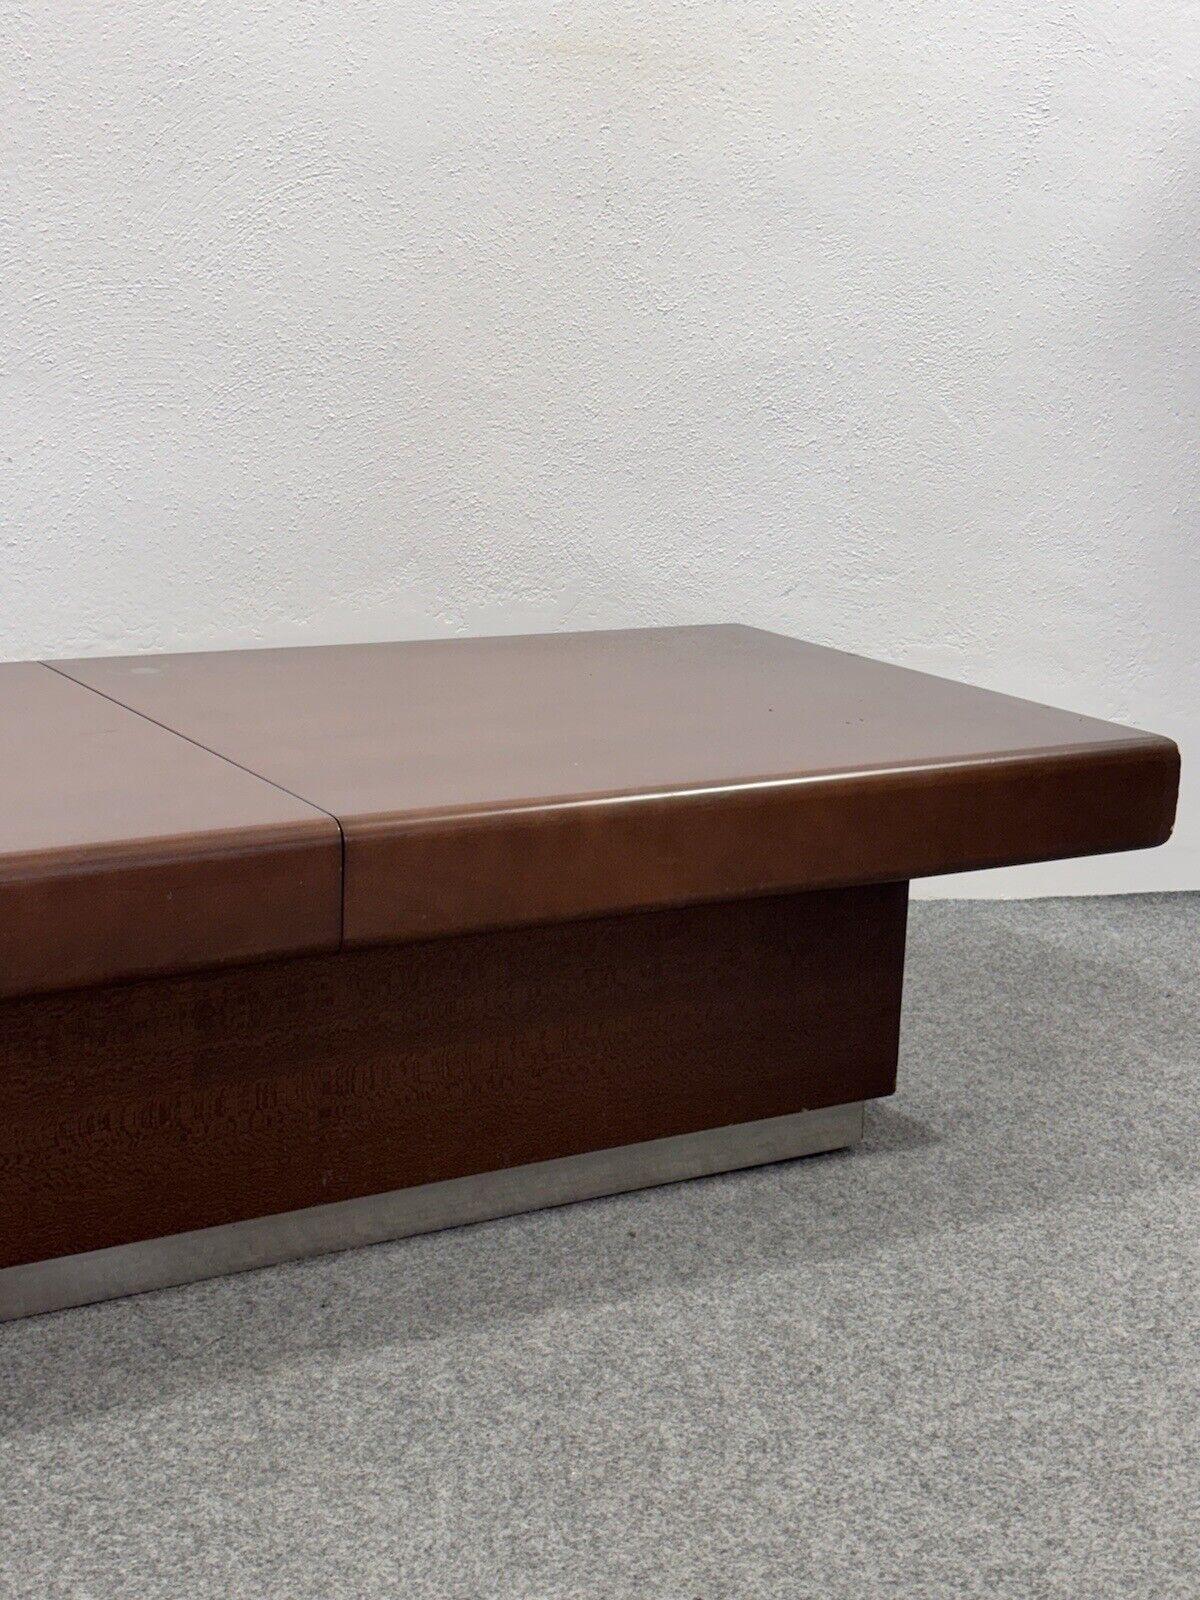 Tavolino da salotto space Age legno anni 60 design Modernariato In Good Condition For Sale In Taranto, IT